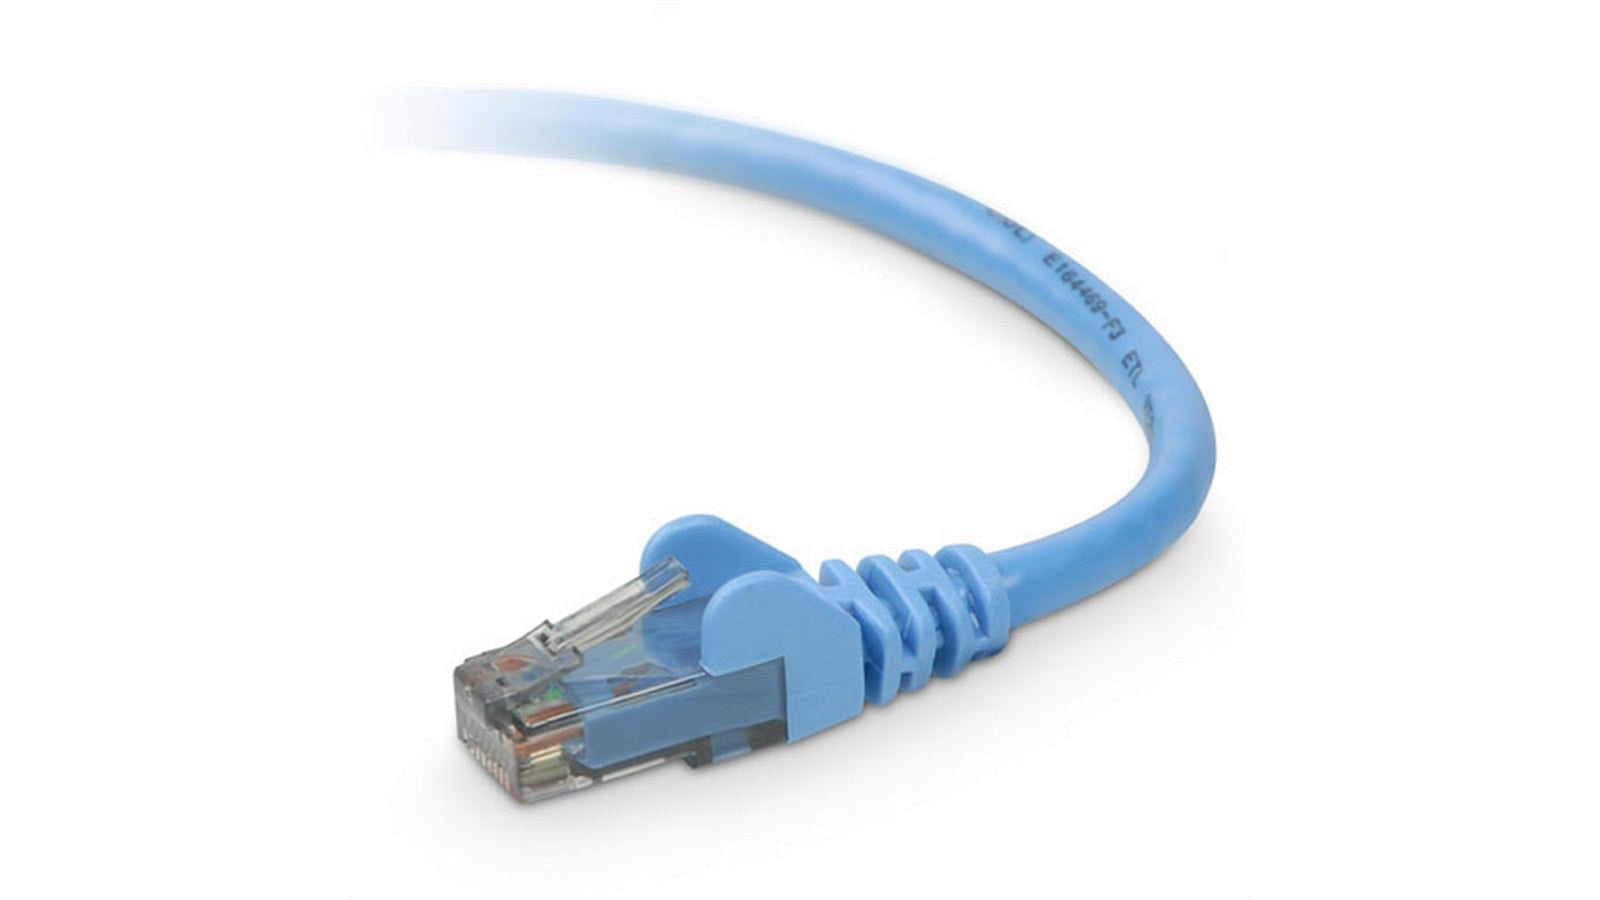 50cm cat6 ethernet cable